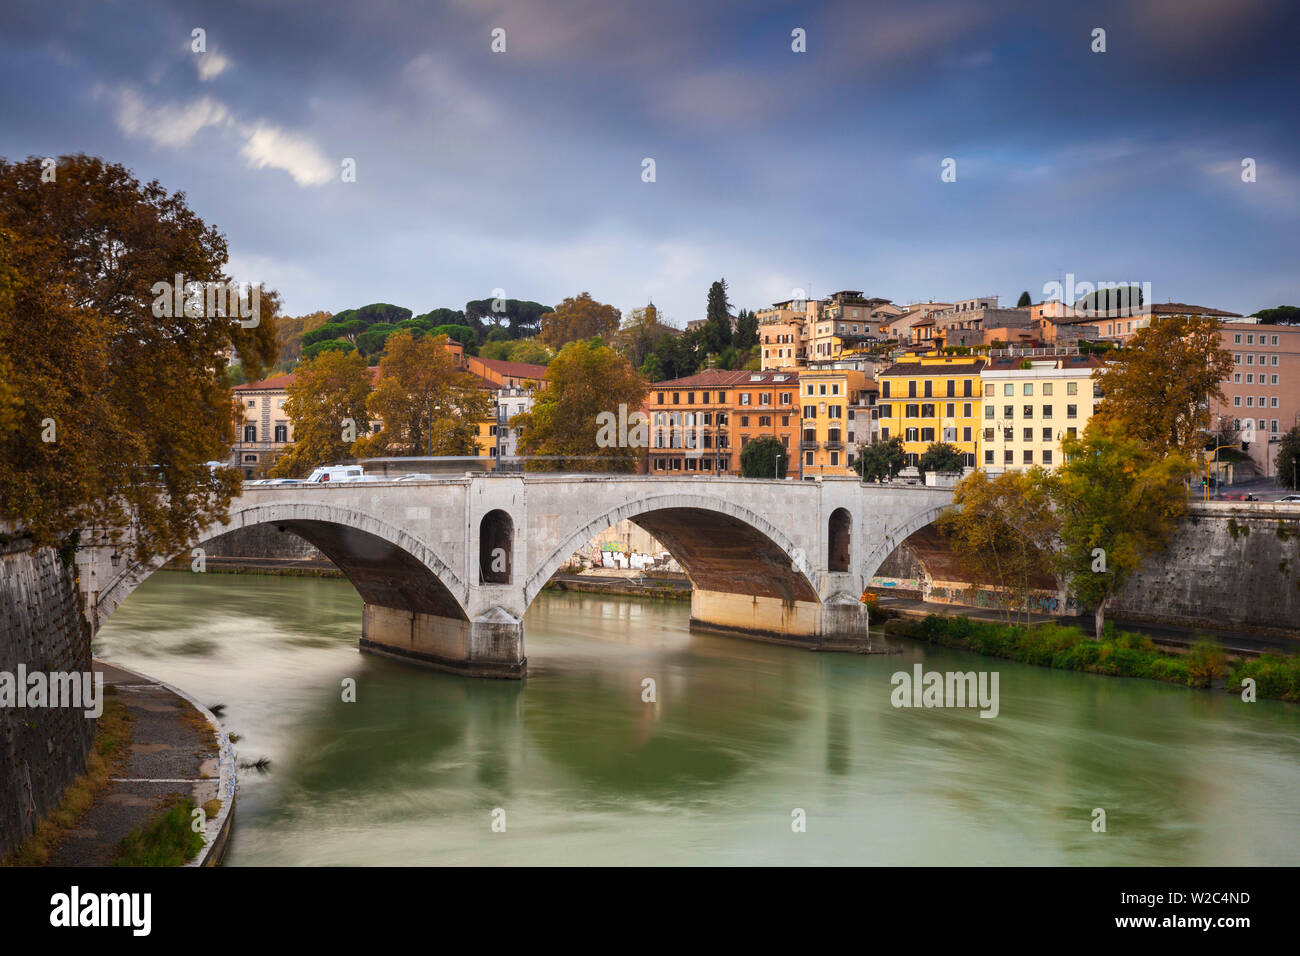 Italy, Lazio, Rome, Principe bridge Stock Photo